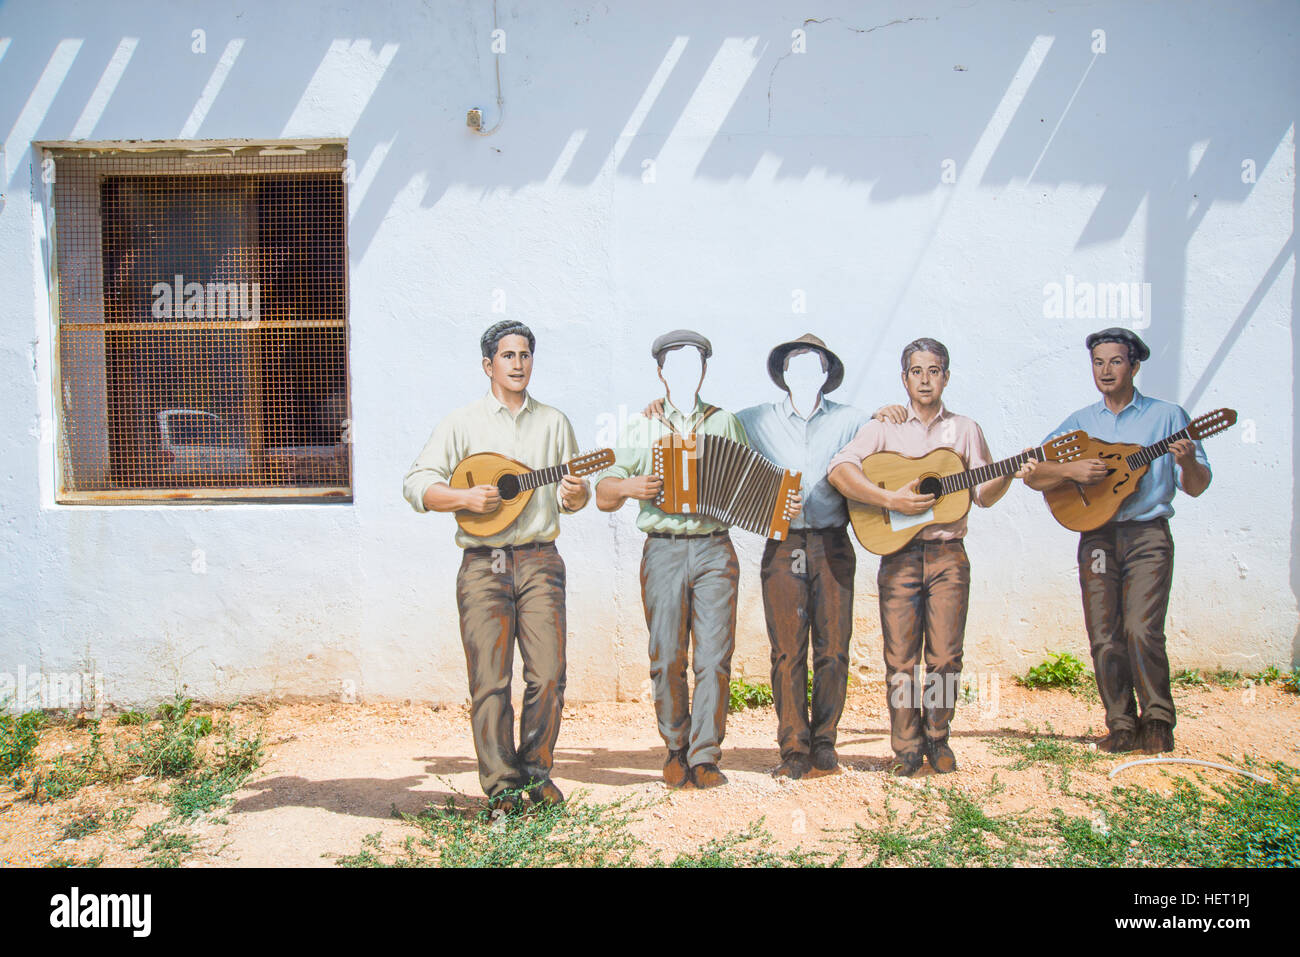 Painted sculpture of five musicians. Cañete, Cuenca province, Castilla La Mancha, Spain. Stock Photo